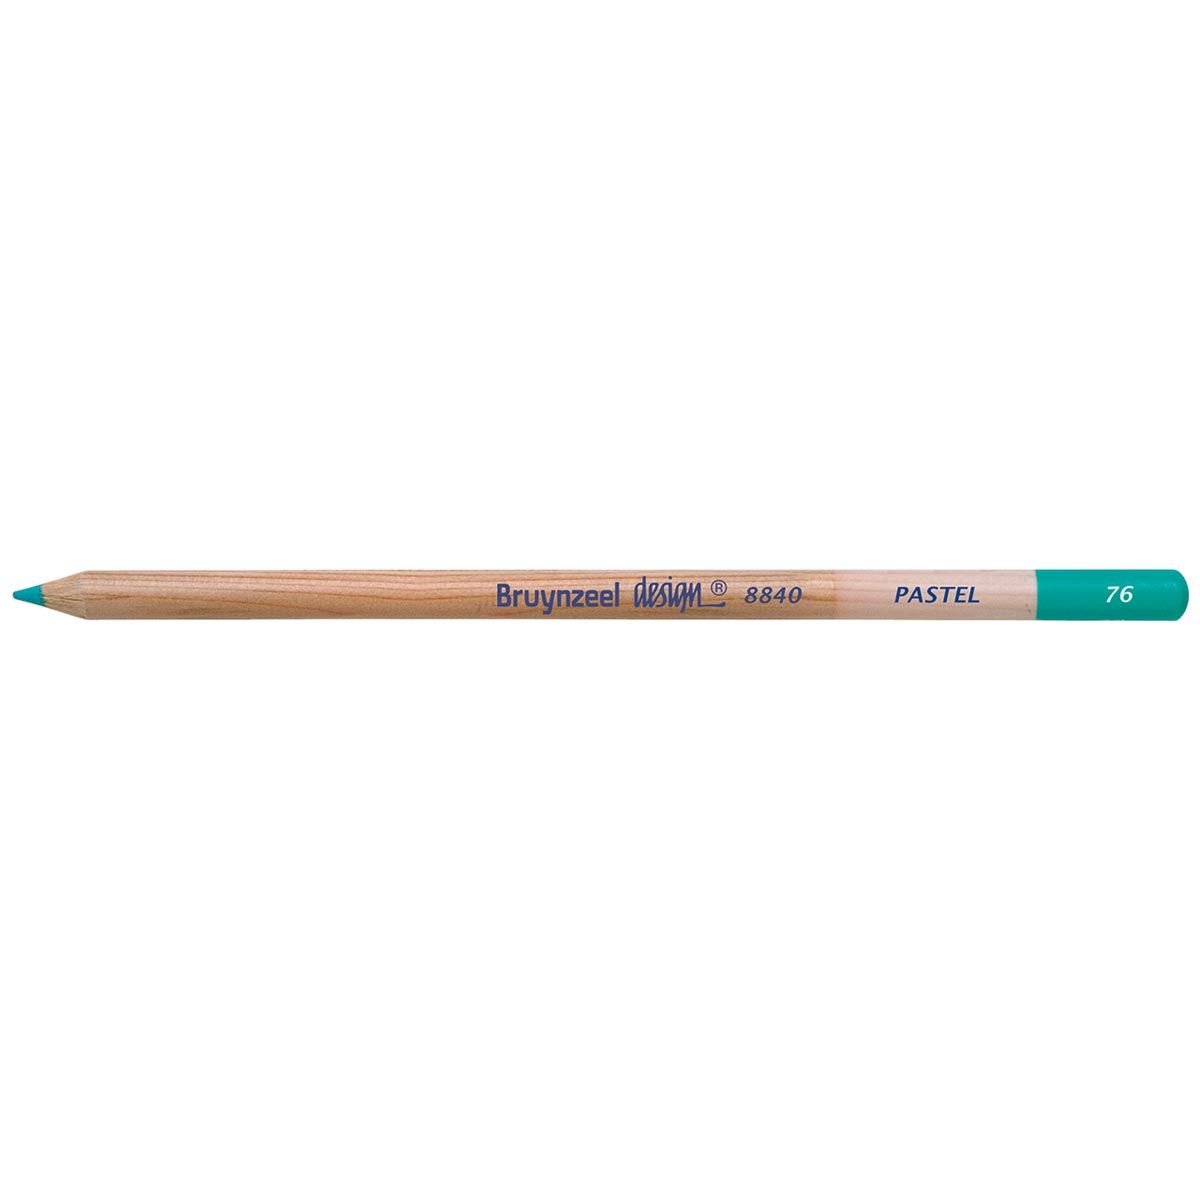 Bruynzeel Design Pastel Pencil - Azur Blue 76